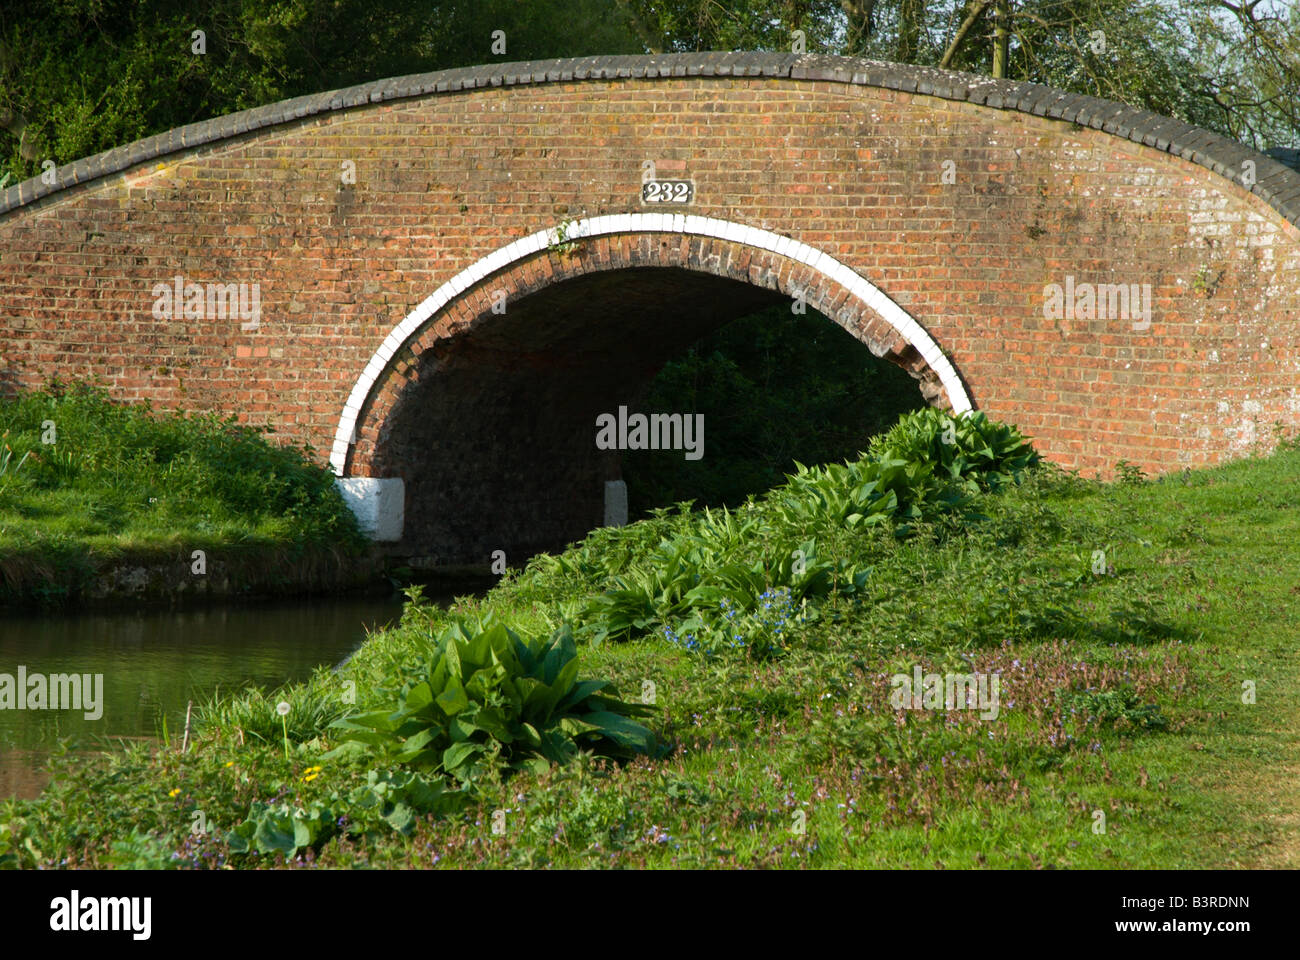 Le Pont de l'arche en brique rouge 232 s'étend sur le canal d'Oxford juste au nord d'Oxford UK Banque D'Images